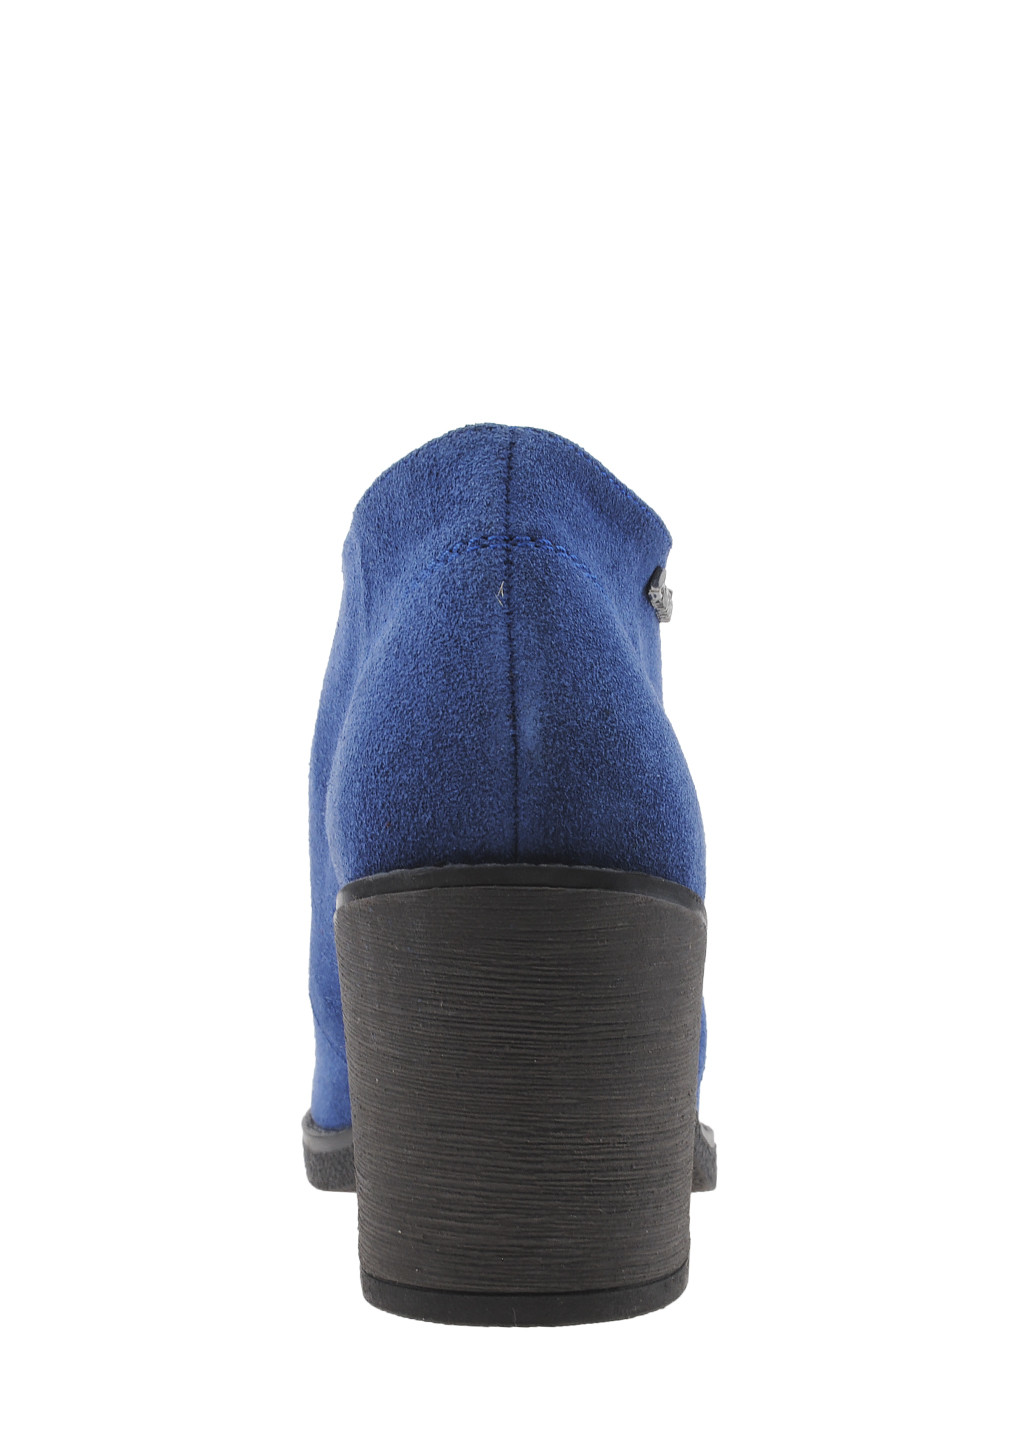 Осенние ботинки r1806-11 голубой Amedea из натуральной замши